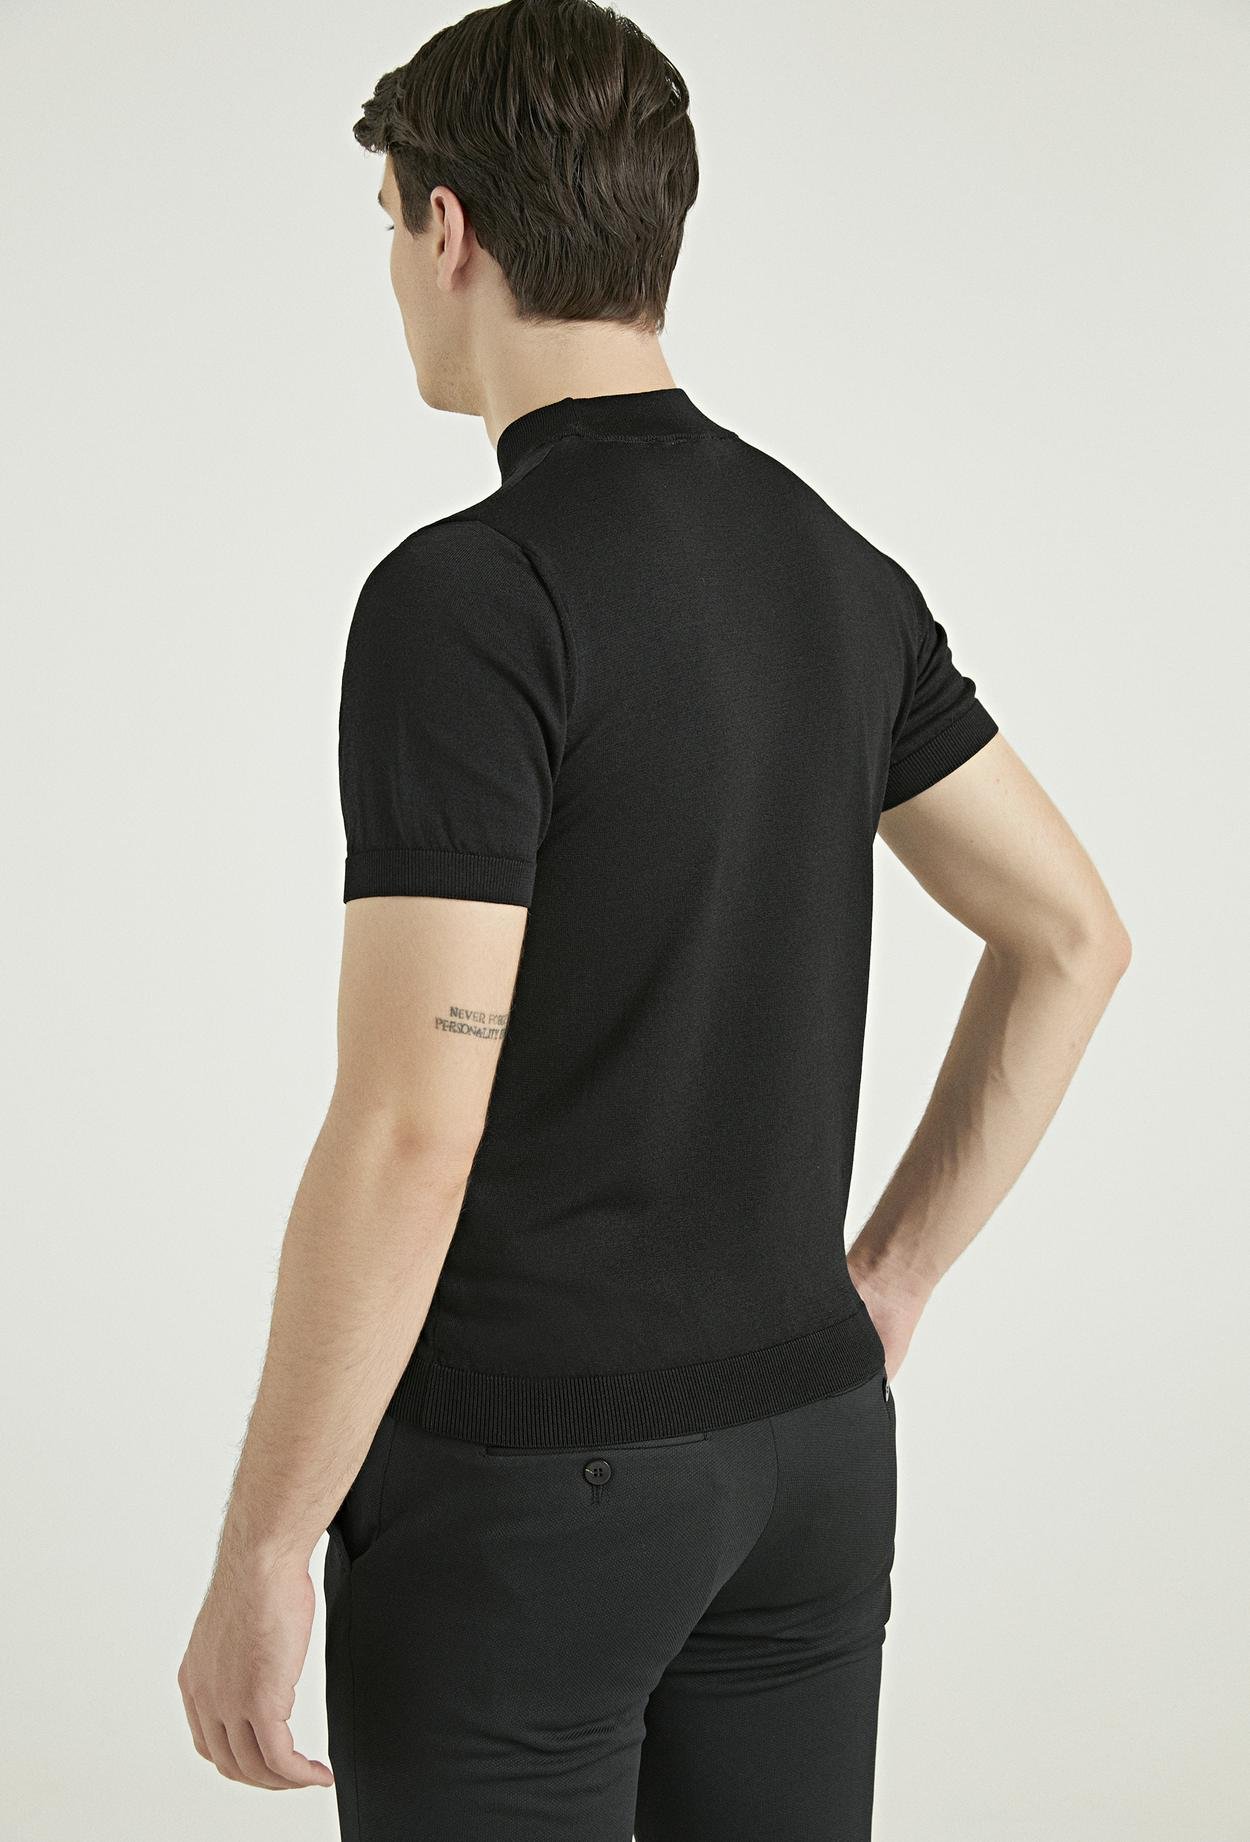 Twn Slim Fit Siyah Rayon Örme T-Shirt